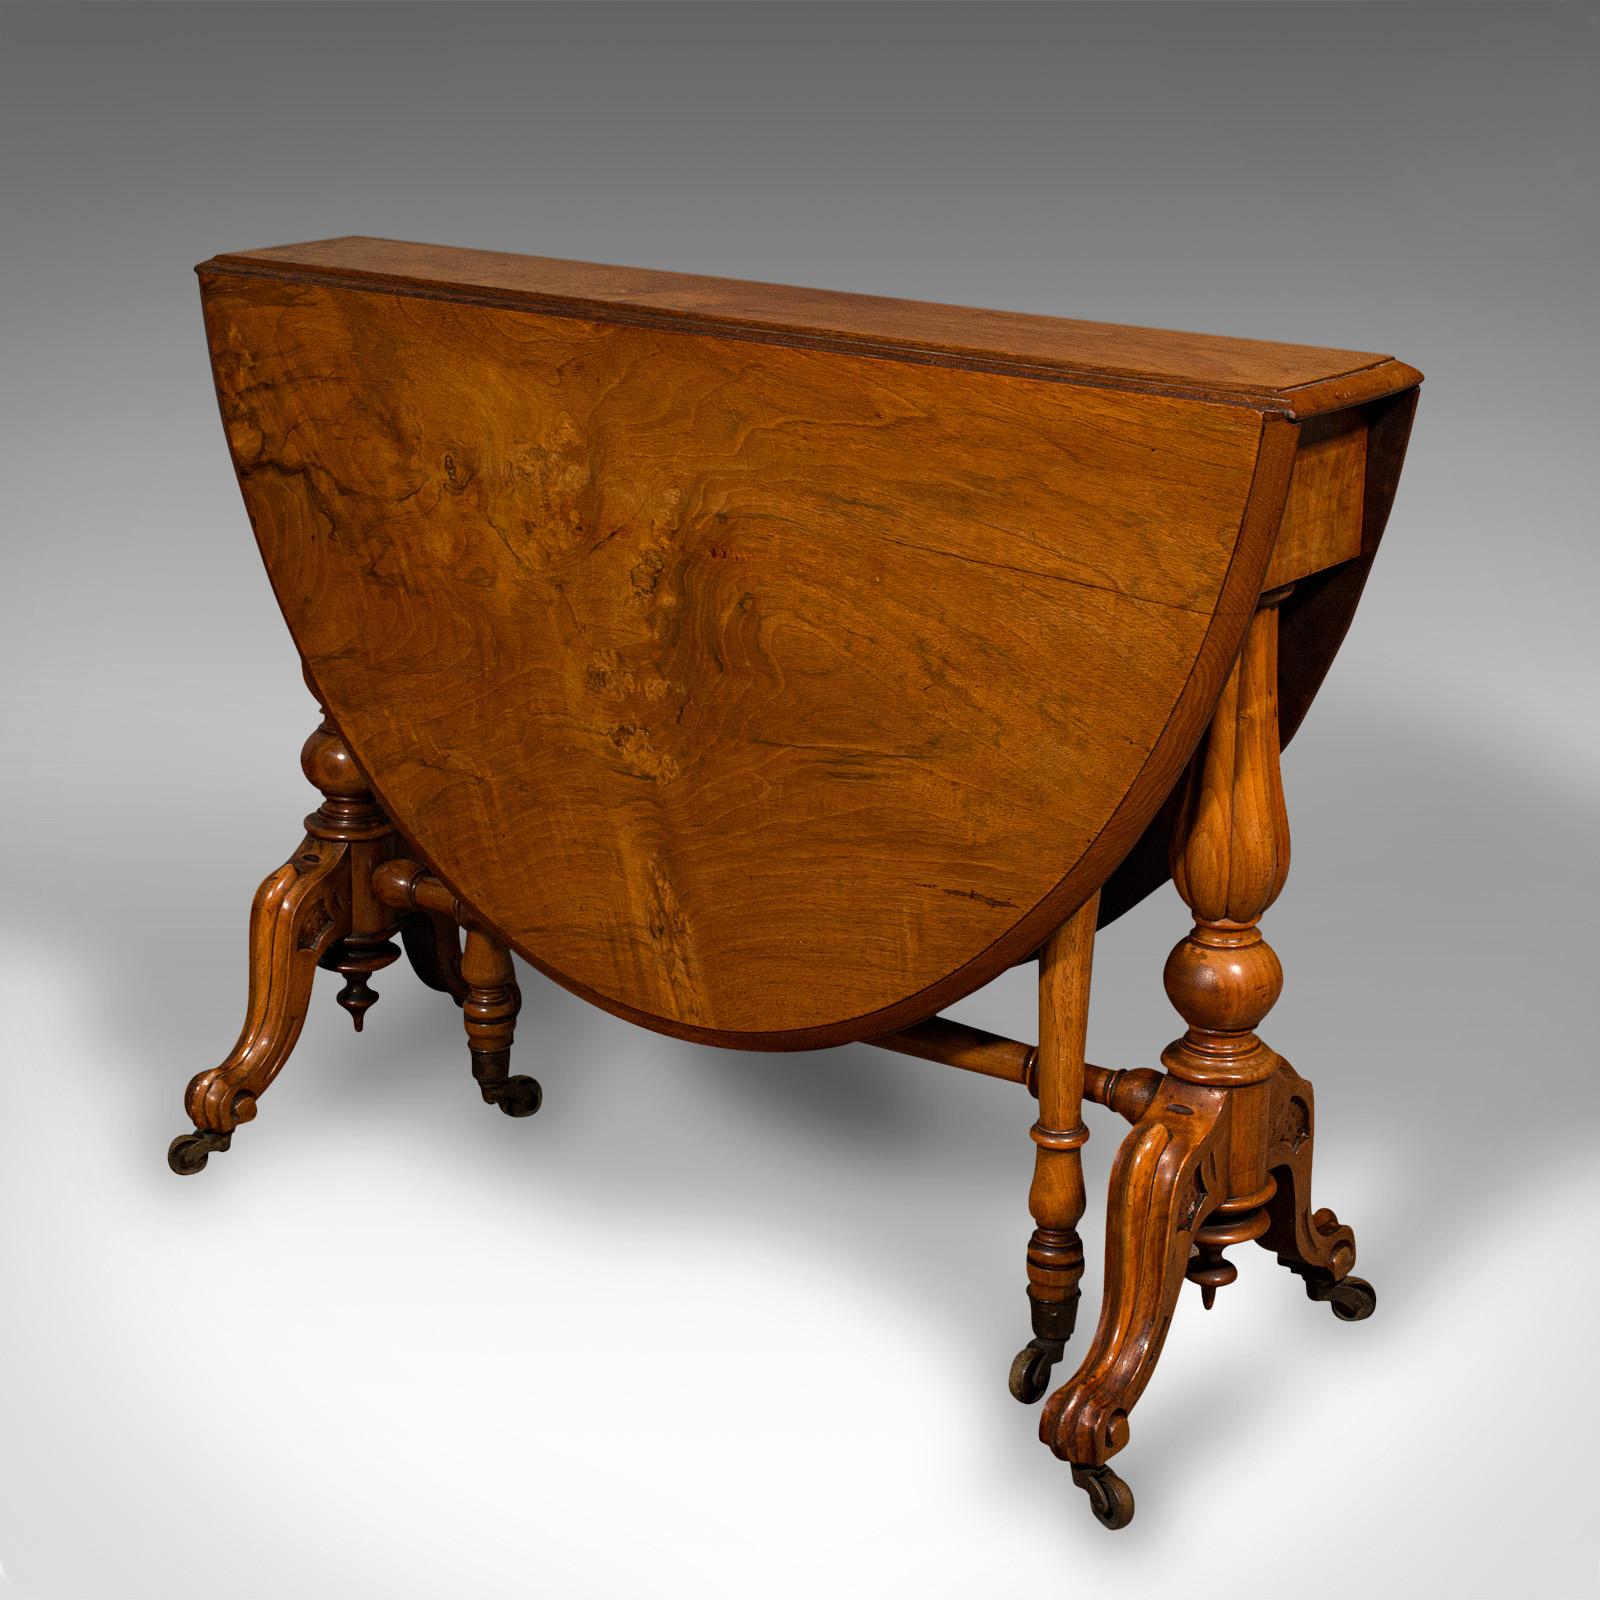 Dies ist ein antiker Sutherland-Tisch. Ein ovaler Beistelltisch aus englischem Wurzelnussholz mit Torbogen, aus der frühen viktorianischen Zeit, um 1850.

Farbenprächtig und mit feiner Handwerkskunst
Zeigt eine wünschenswerte gealterte Patina und in